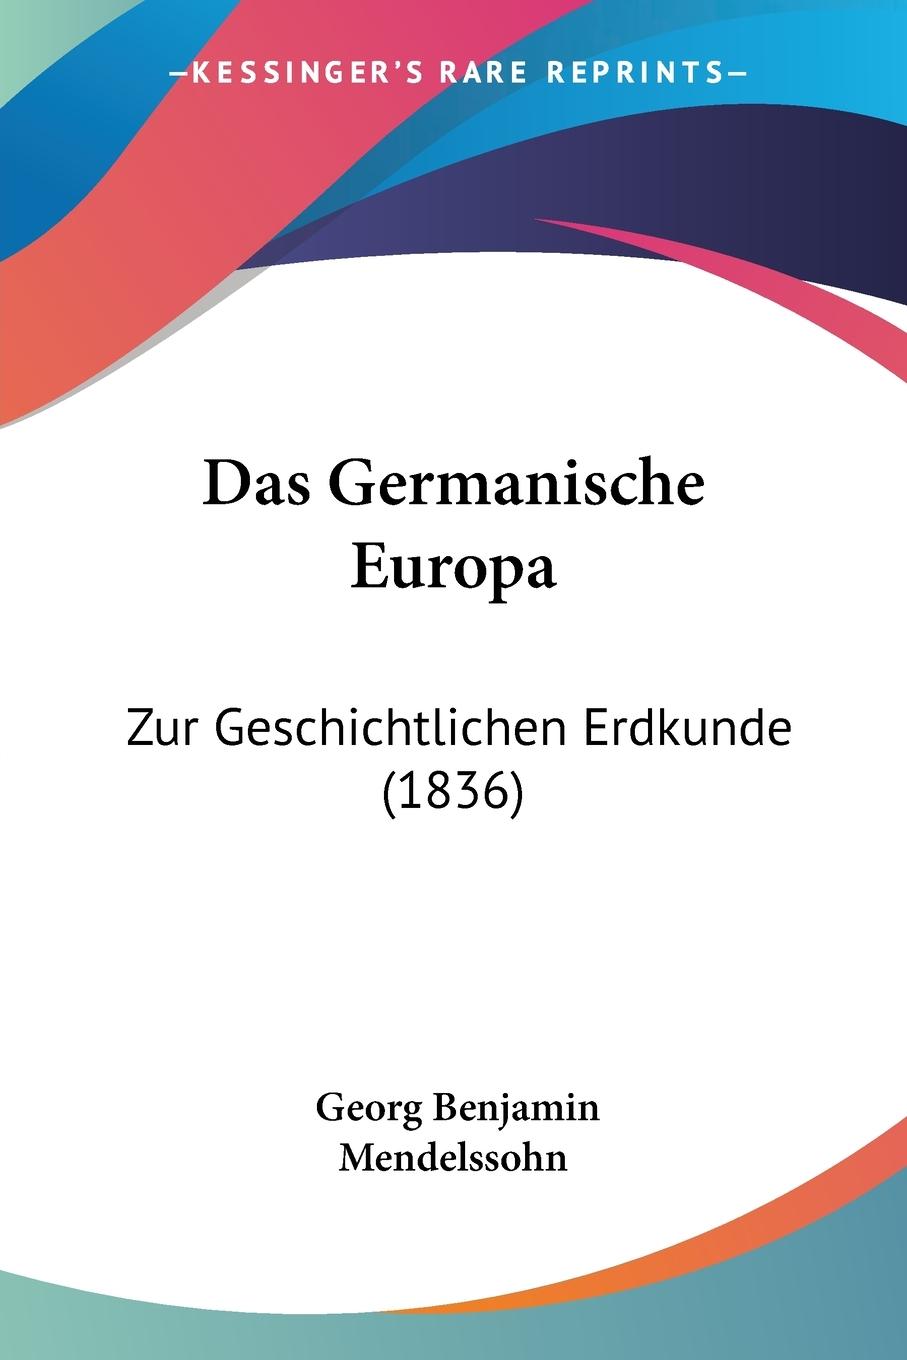 Das Germanische Europa - Mendelssohn, Georg Benjamin